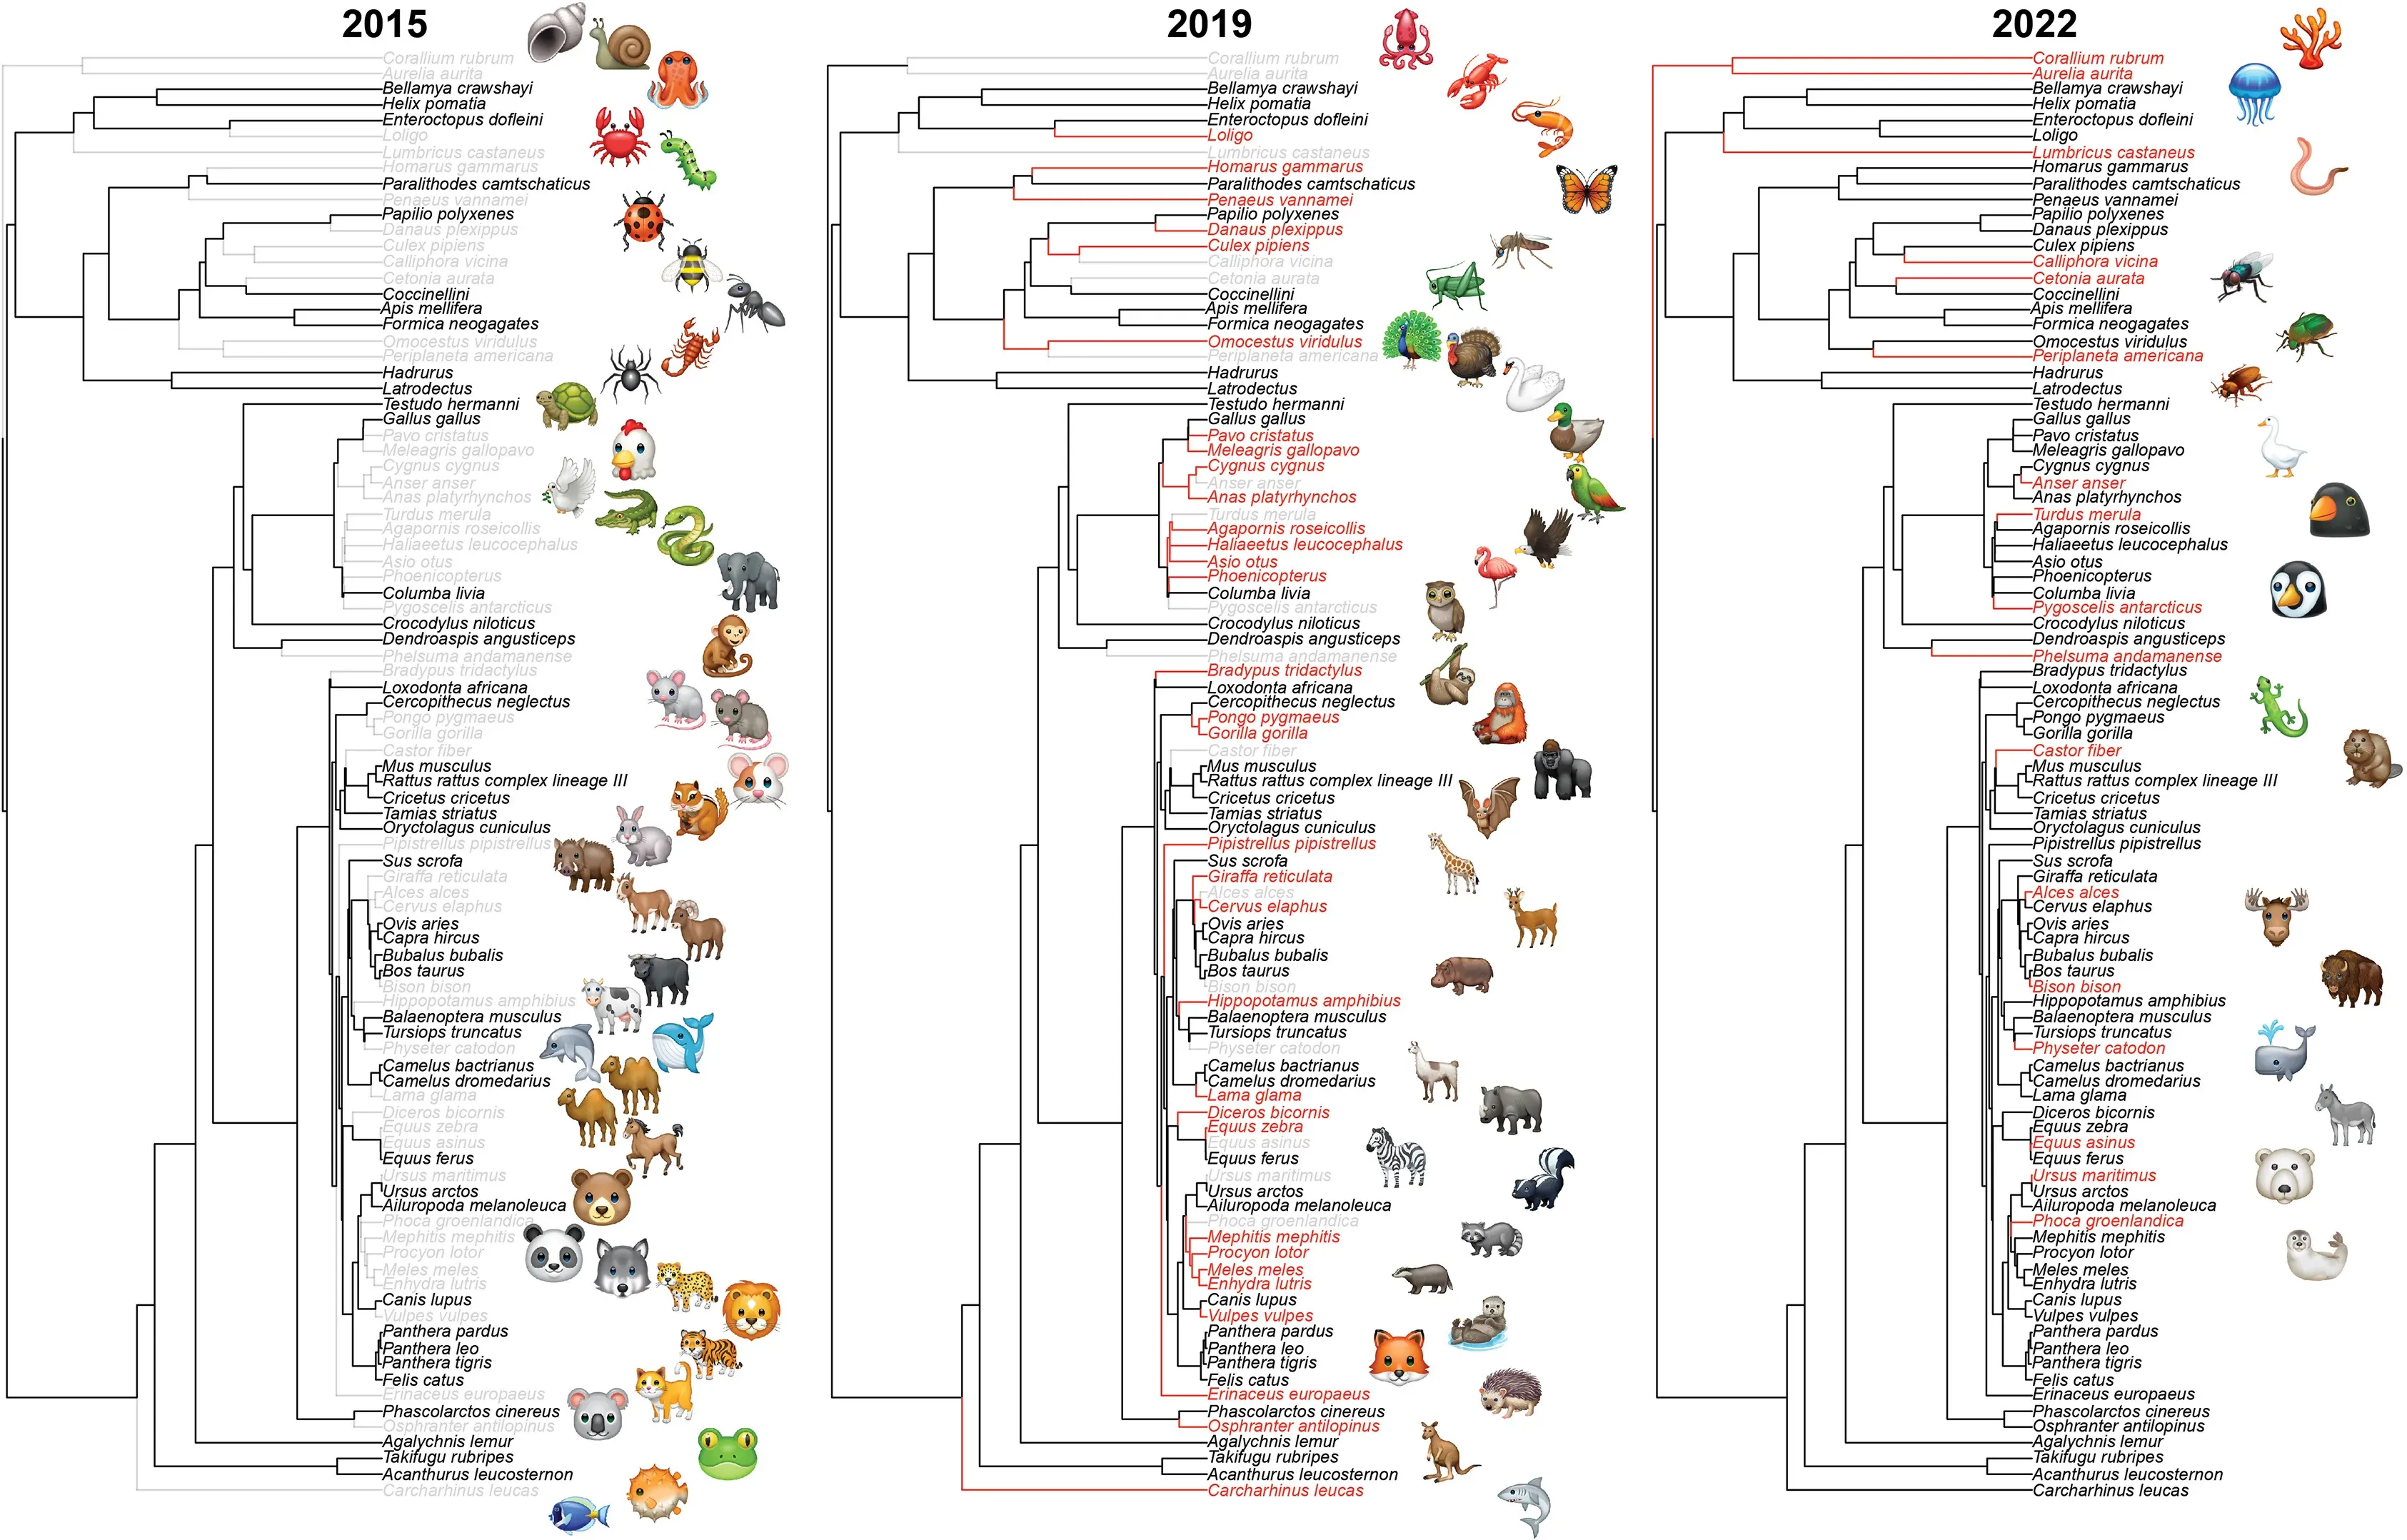 Філогенетичні дерева емодзі 2015, 2019 і 2022 років. Stefano Mammola et al. / iScience, 2023